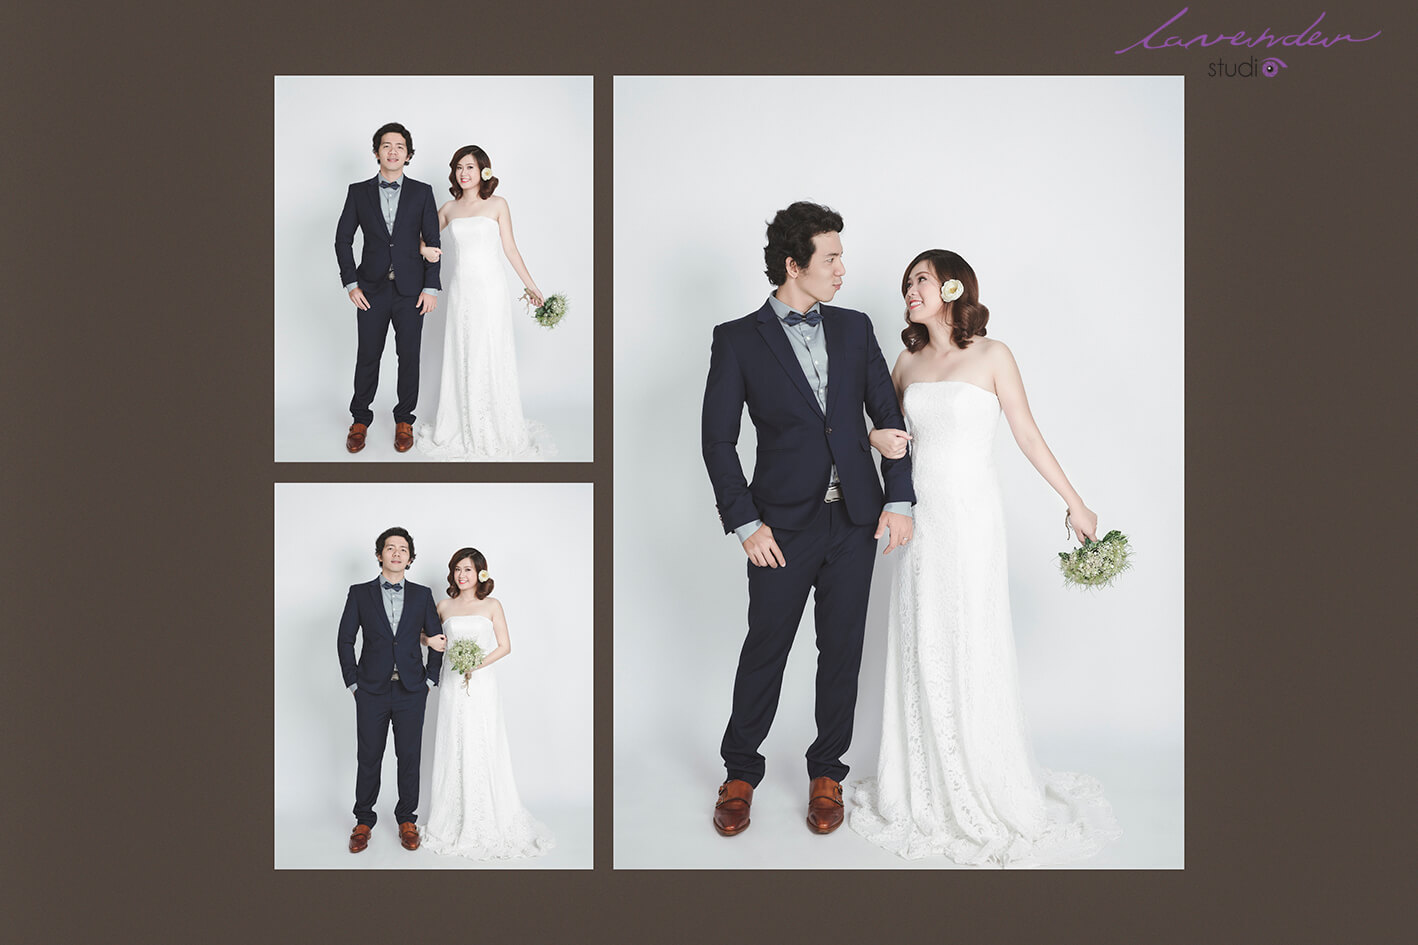 bộ ảnh cưới Hàn Quốc được thực hiện bởi Lavender Studio